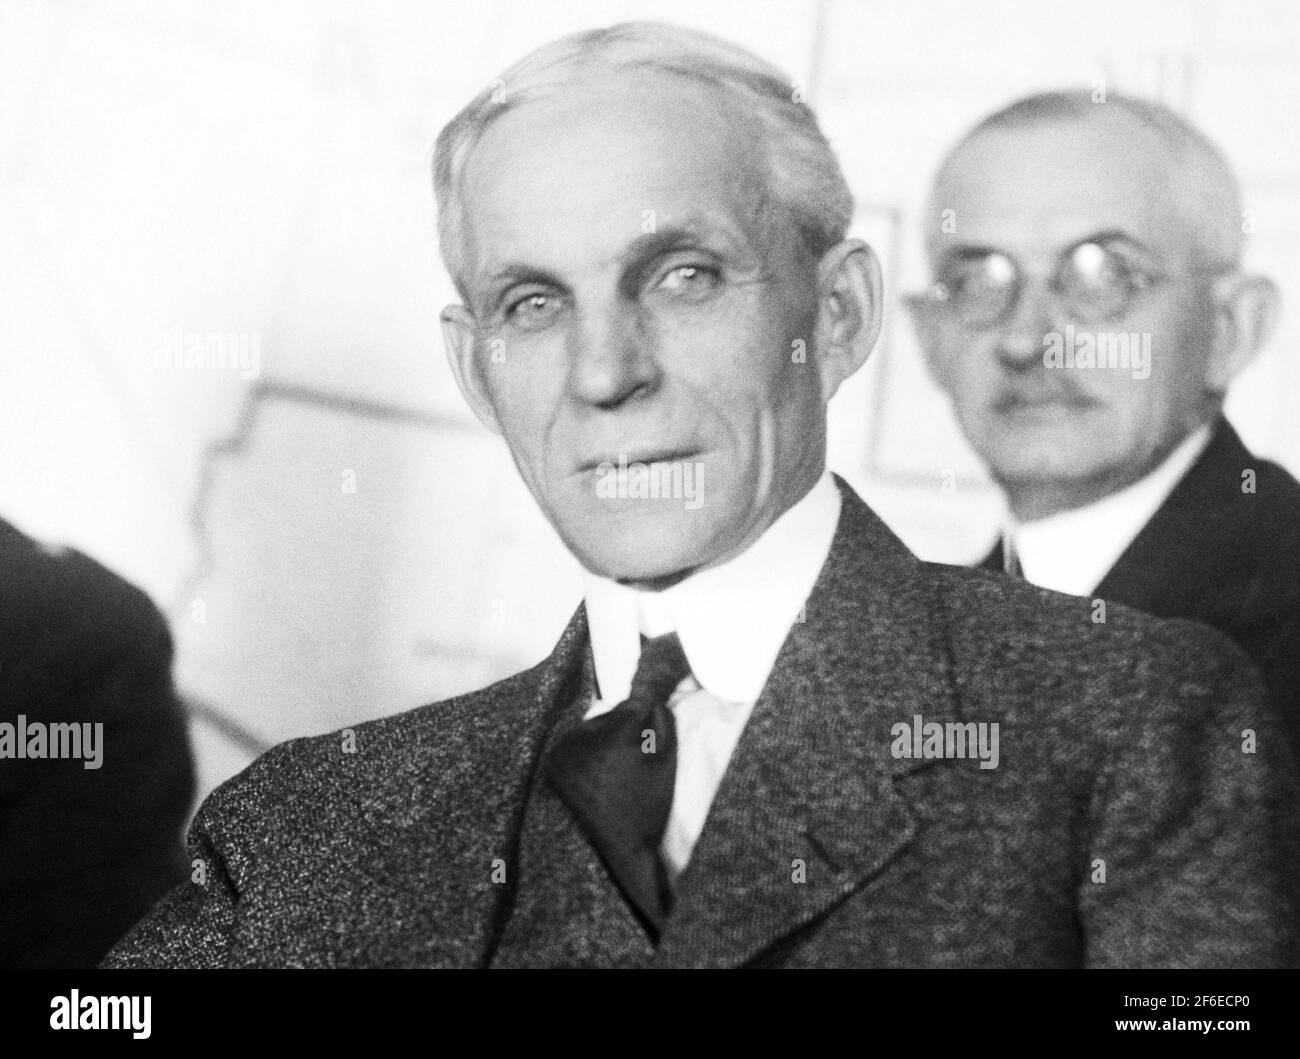 Foto d'epoca dell'industriale americano e magnate d'affari Henry Ford (1863 – 1947) – fondatore della Ford Motor Company. Foto di Harris & Ewing scattata nel 1922. Foto Stock